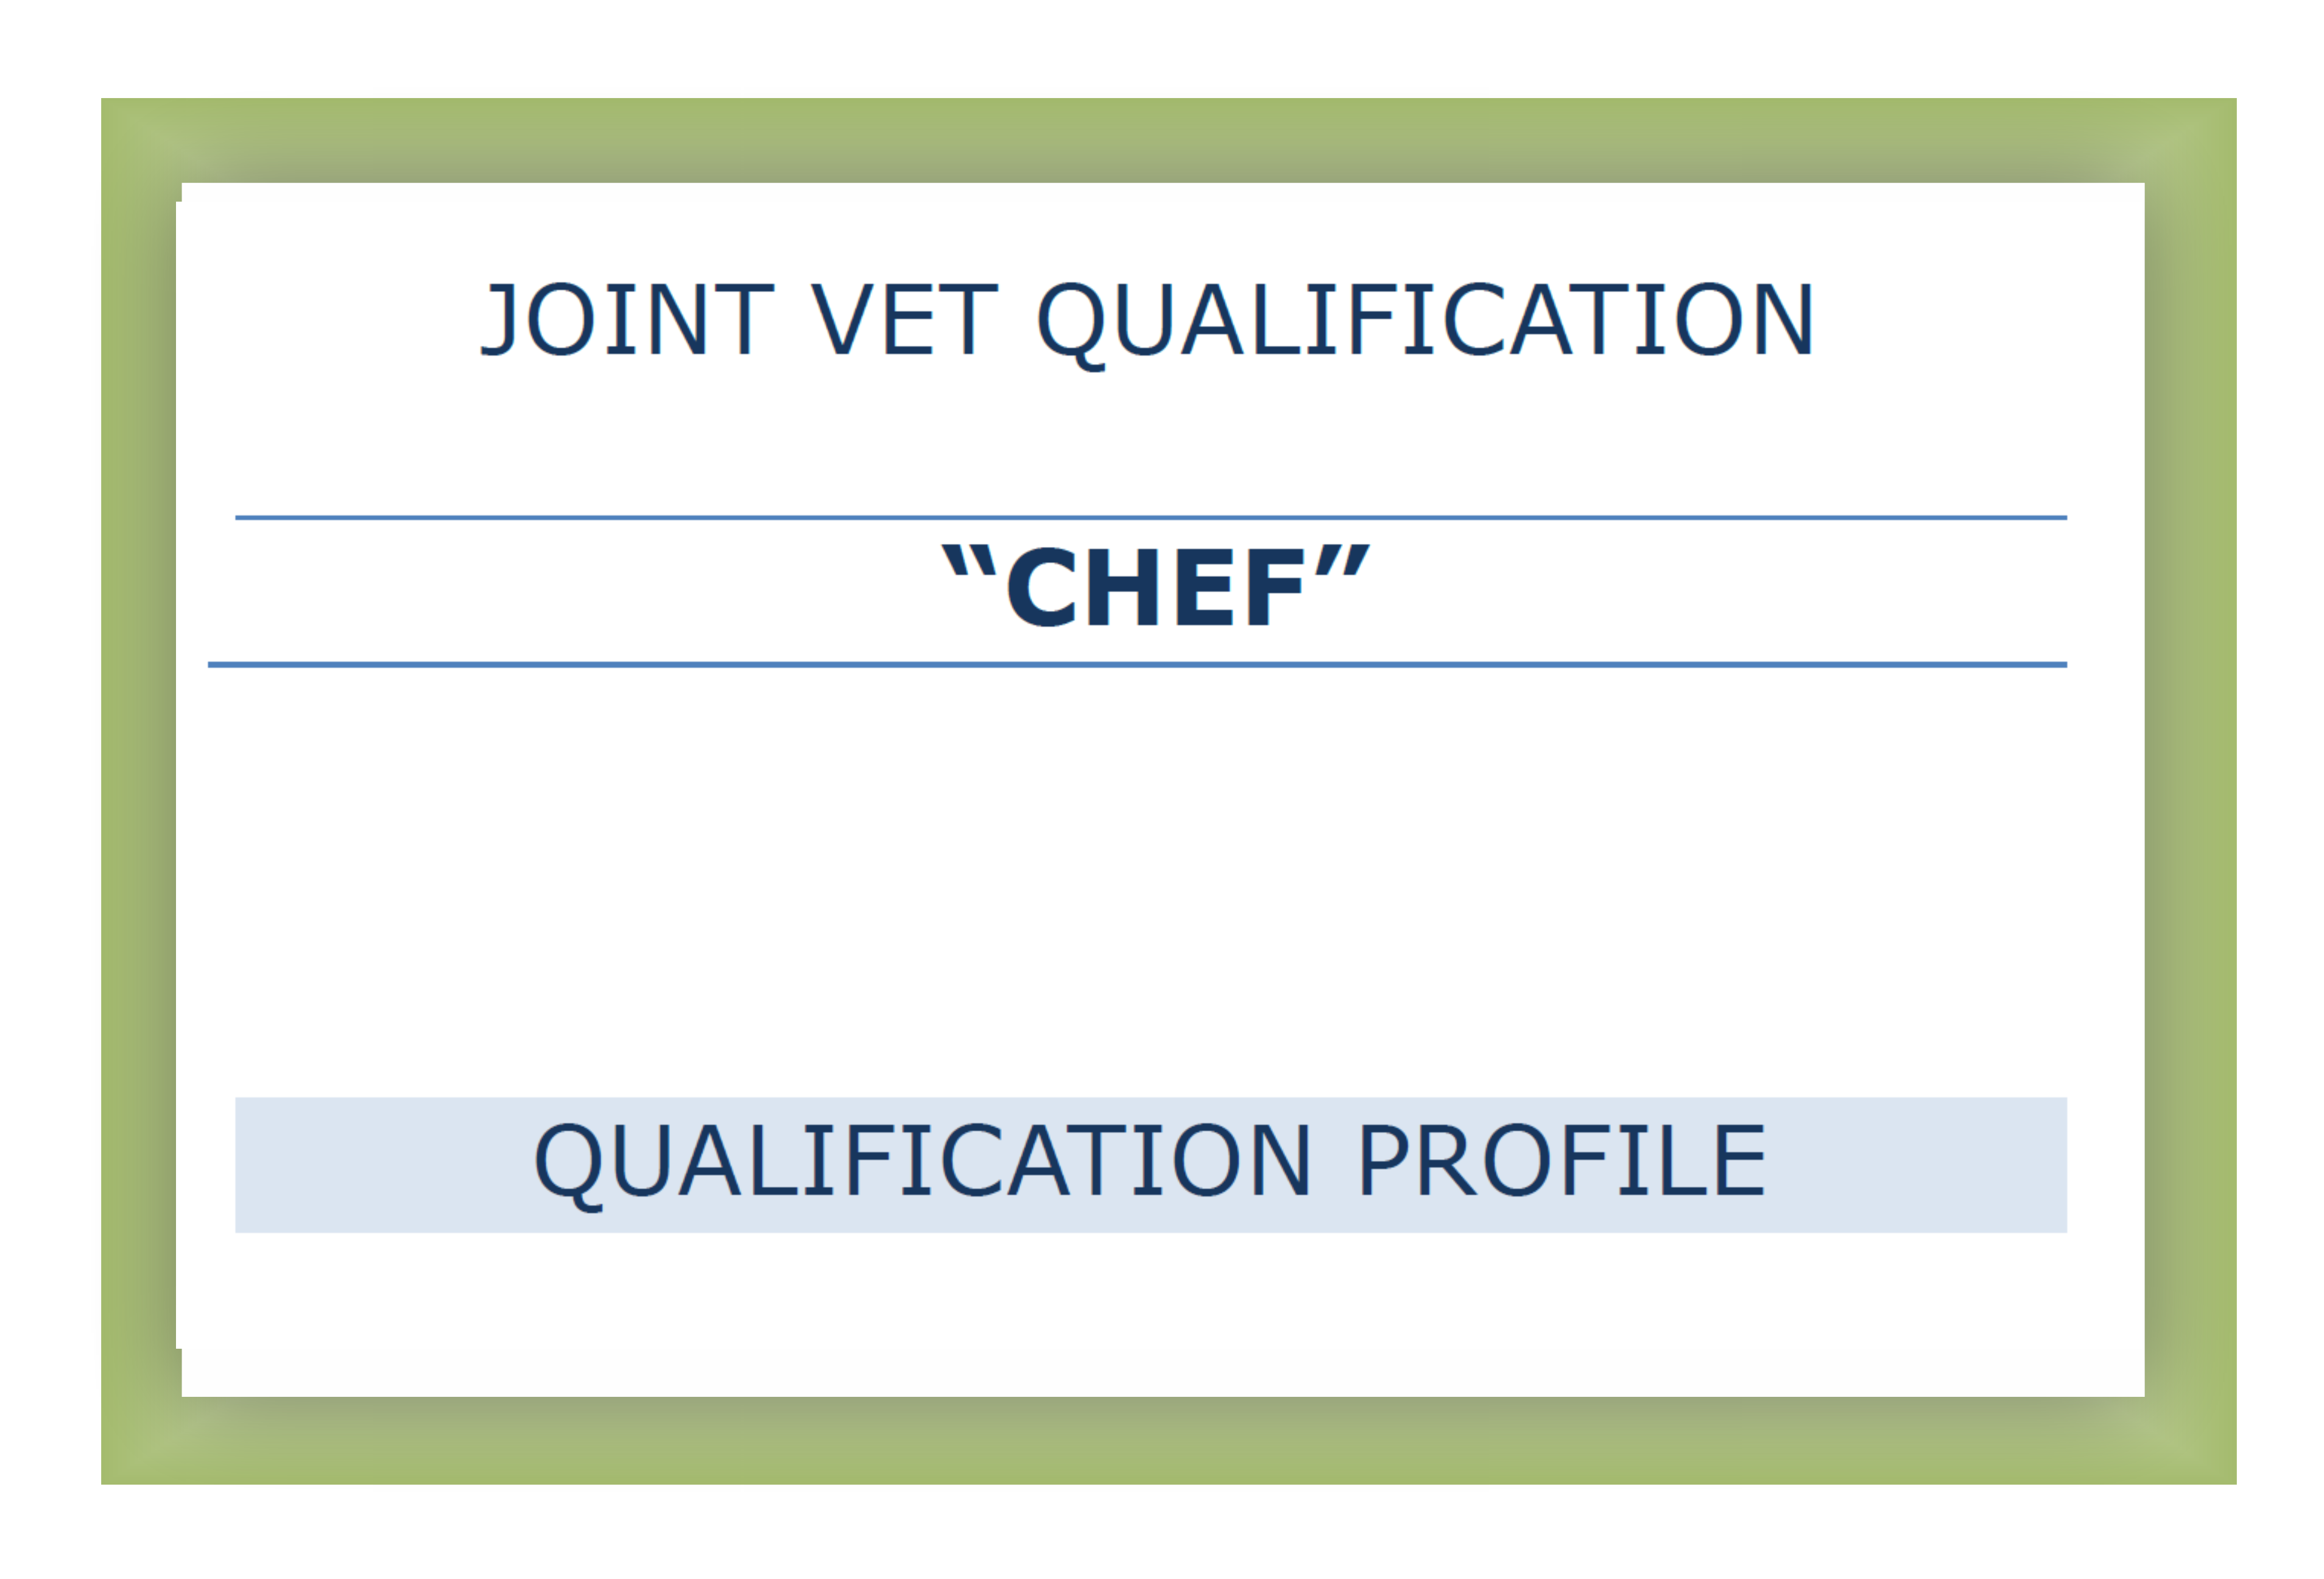 Qualification profile